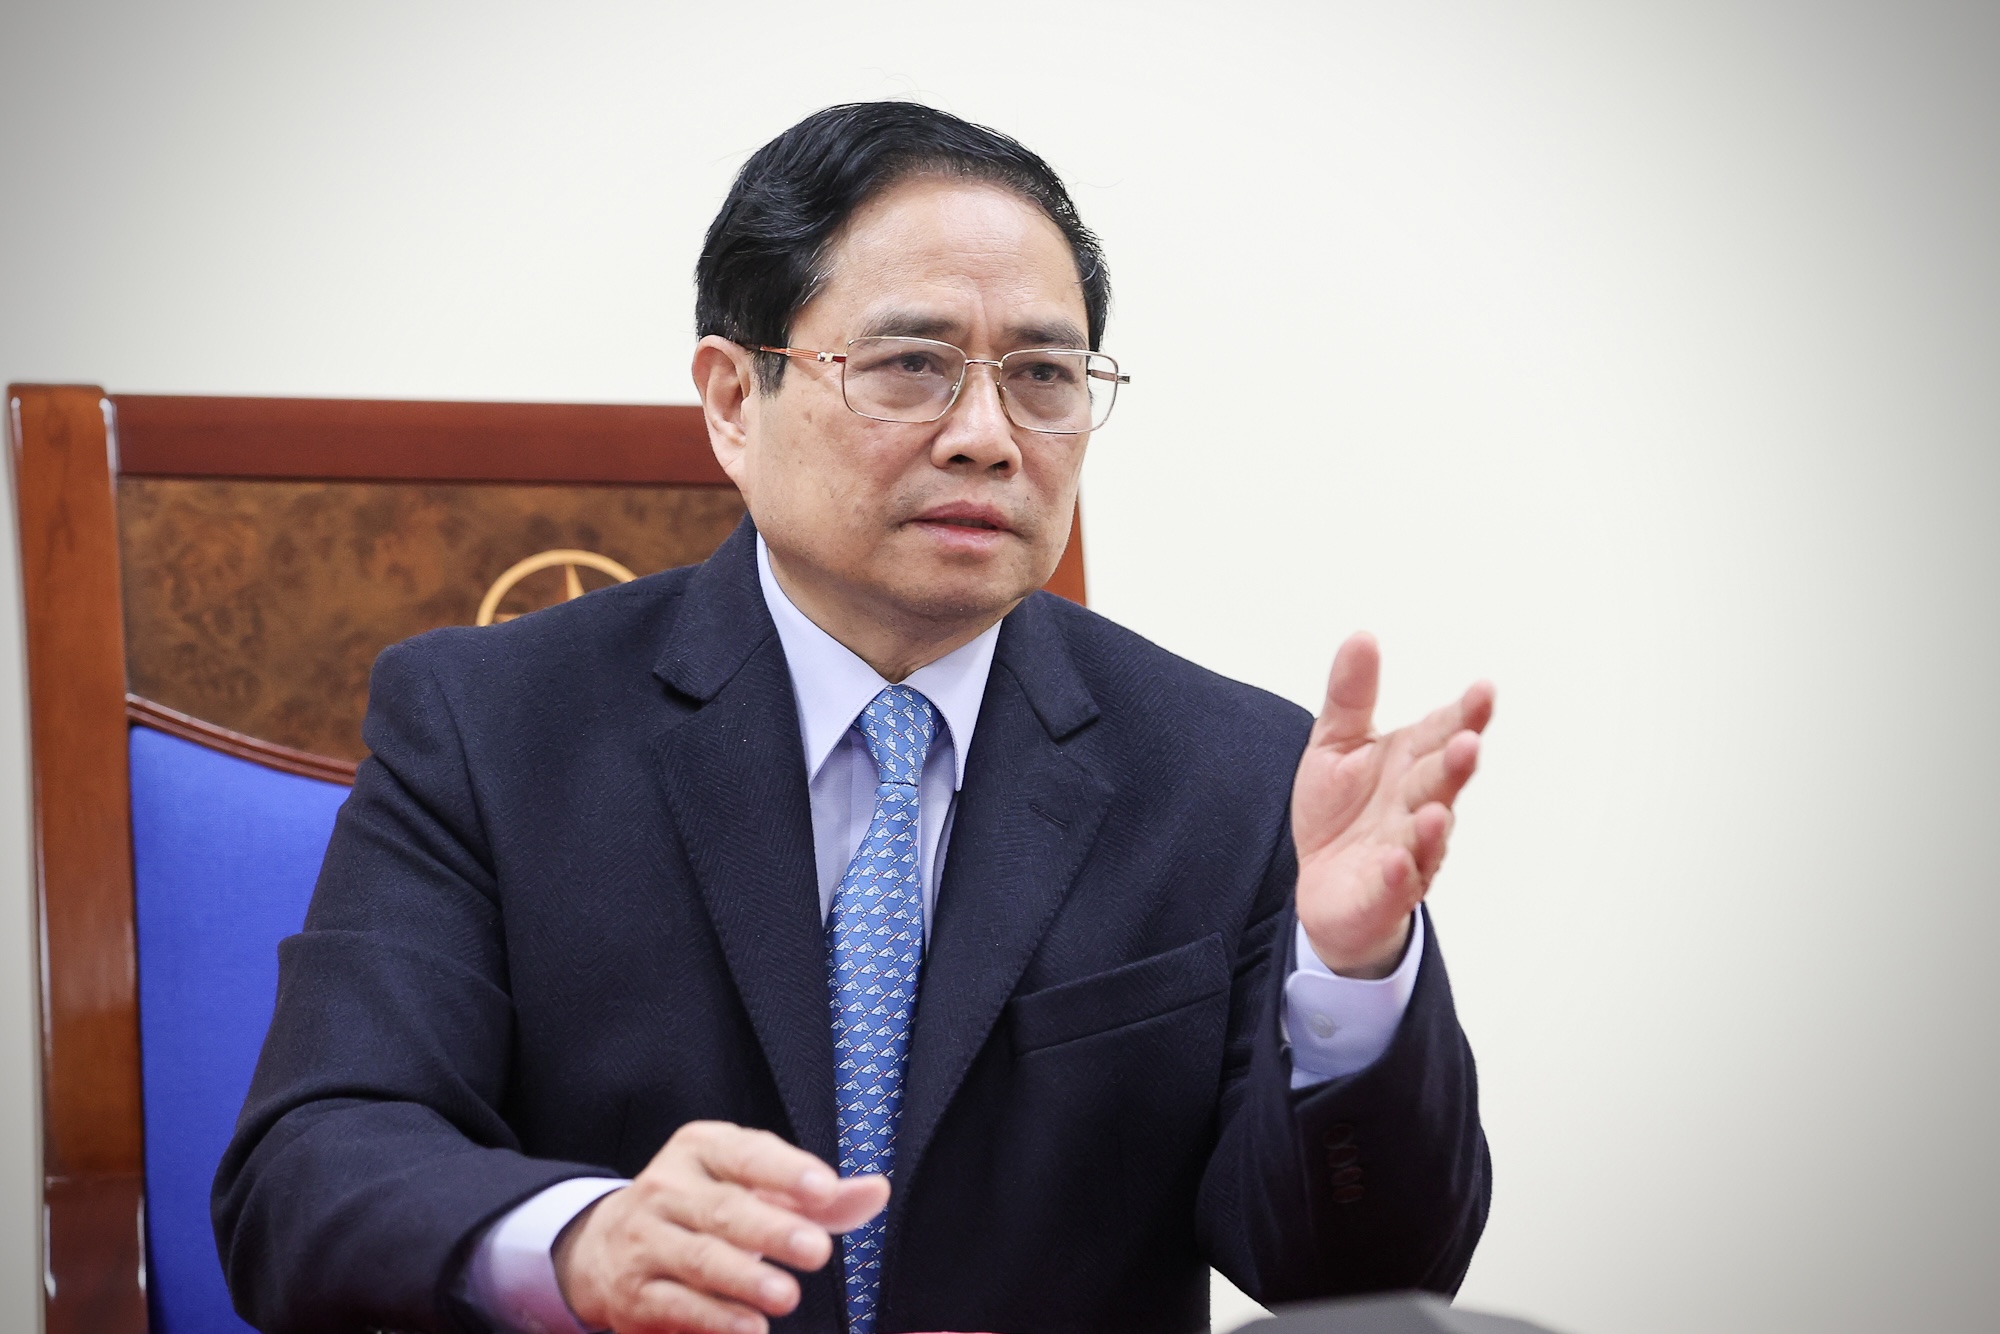 Thủ tướng Phạm Minh Chính chỉ đạo lập nhóm công tác sau điện đàm với Thủ tướng Trung Quốc - Ảnh 1.